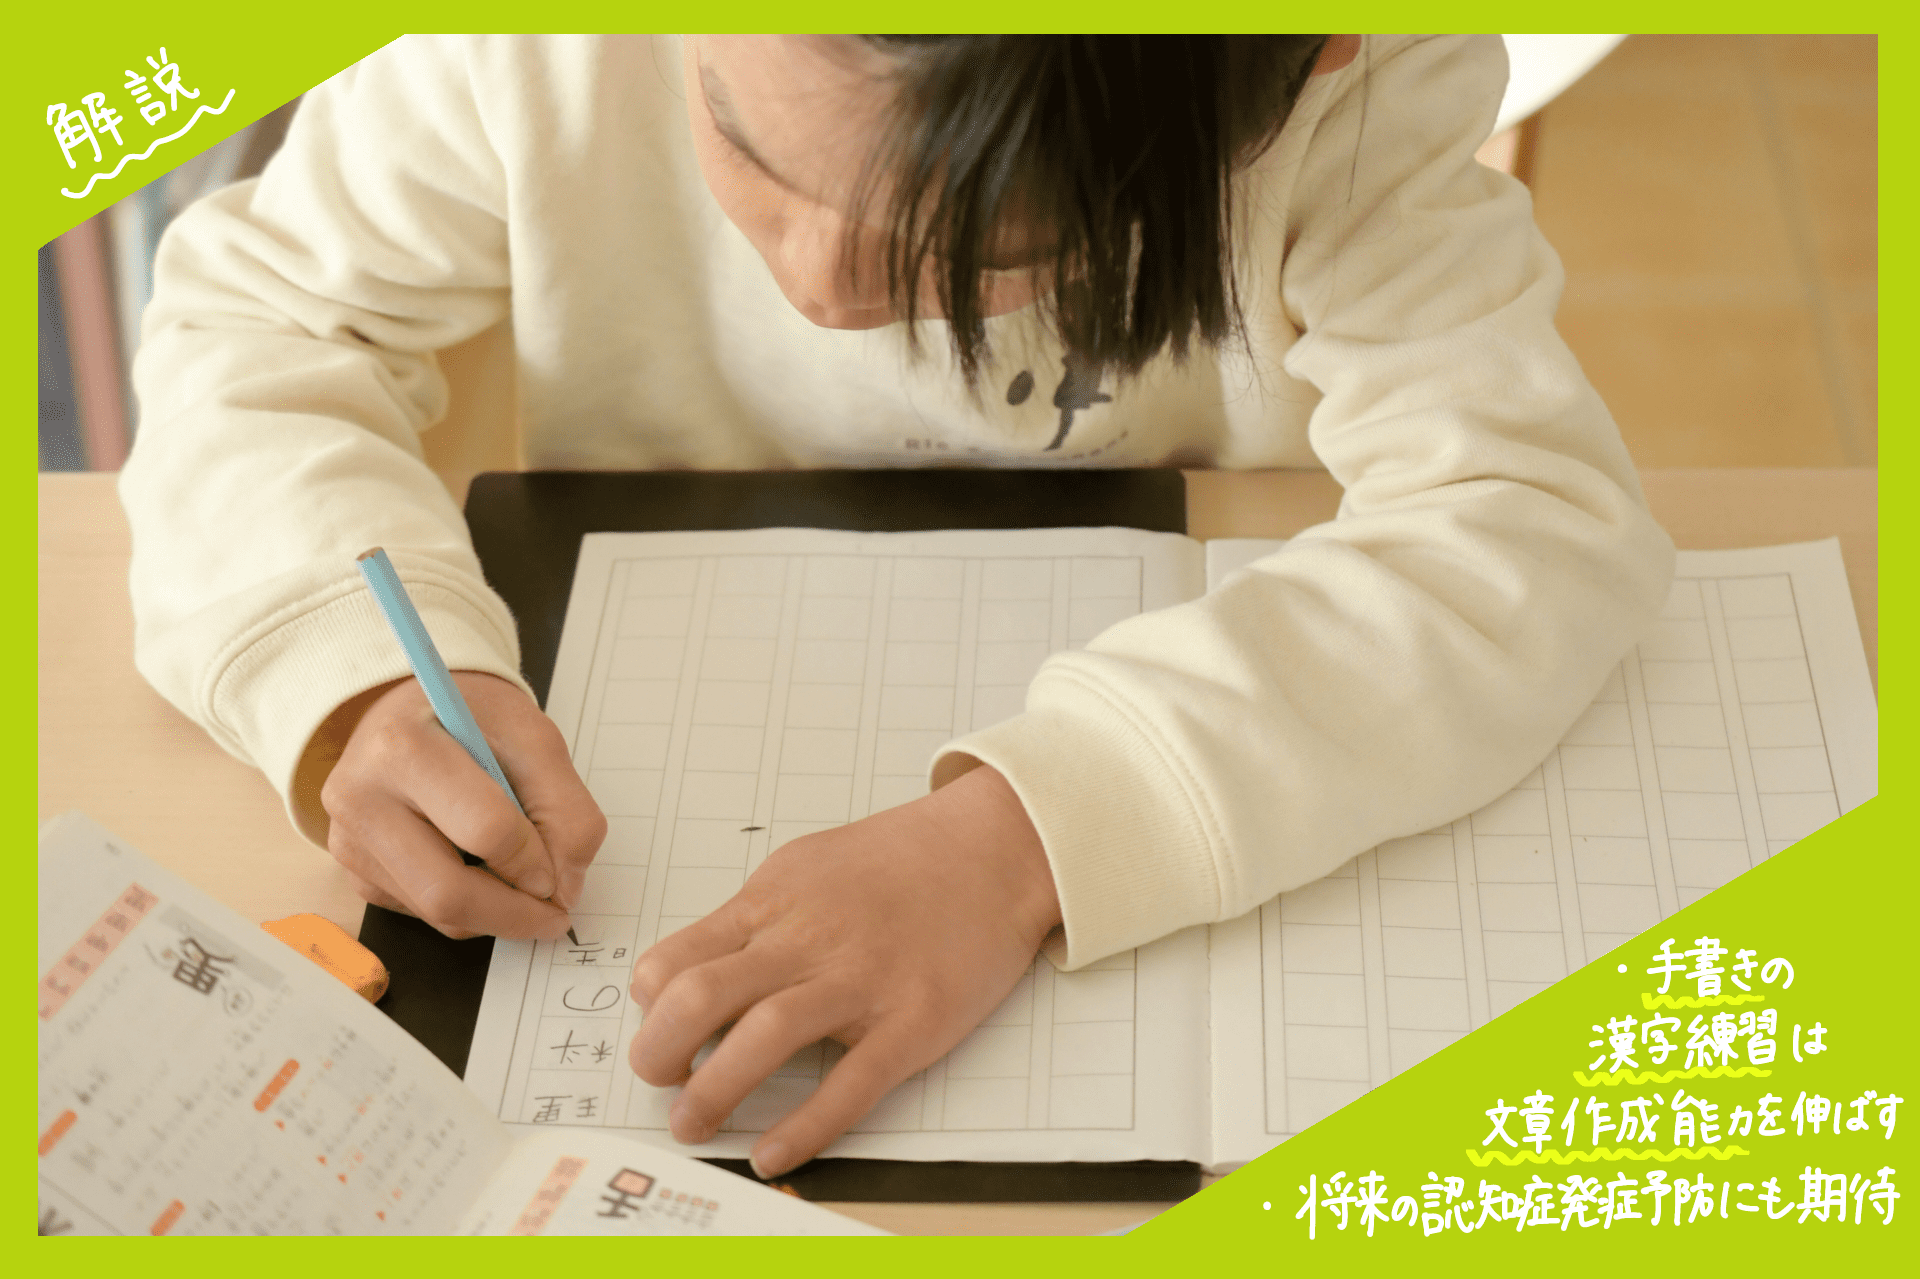 手書きの漢字練習って大事！デジタル時代に手書きで漢字練習をするメリットとは